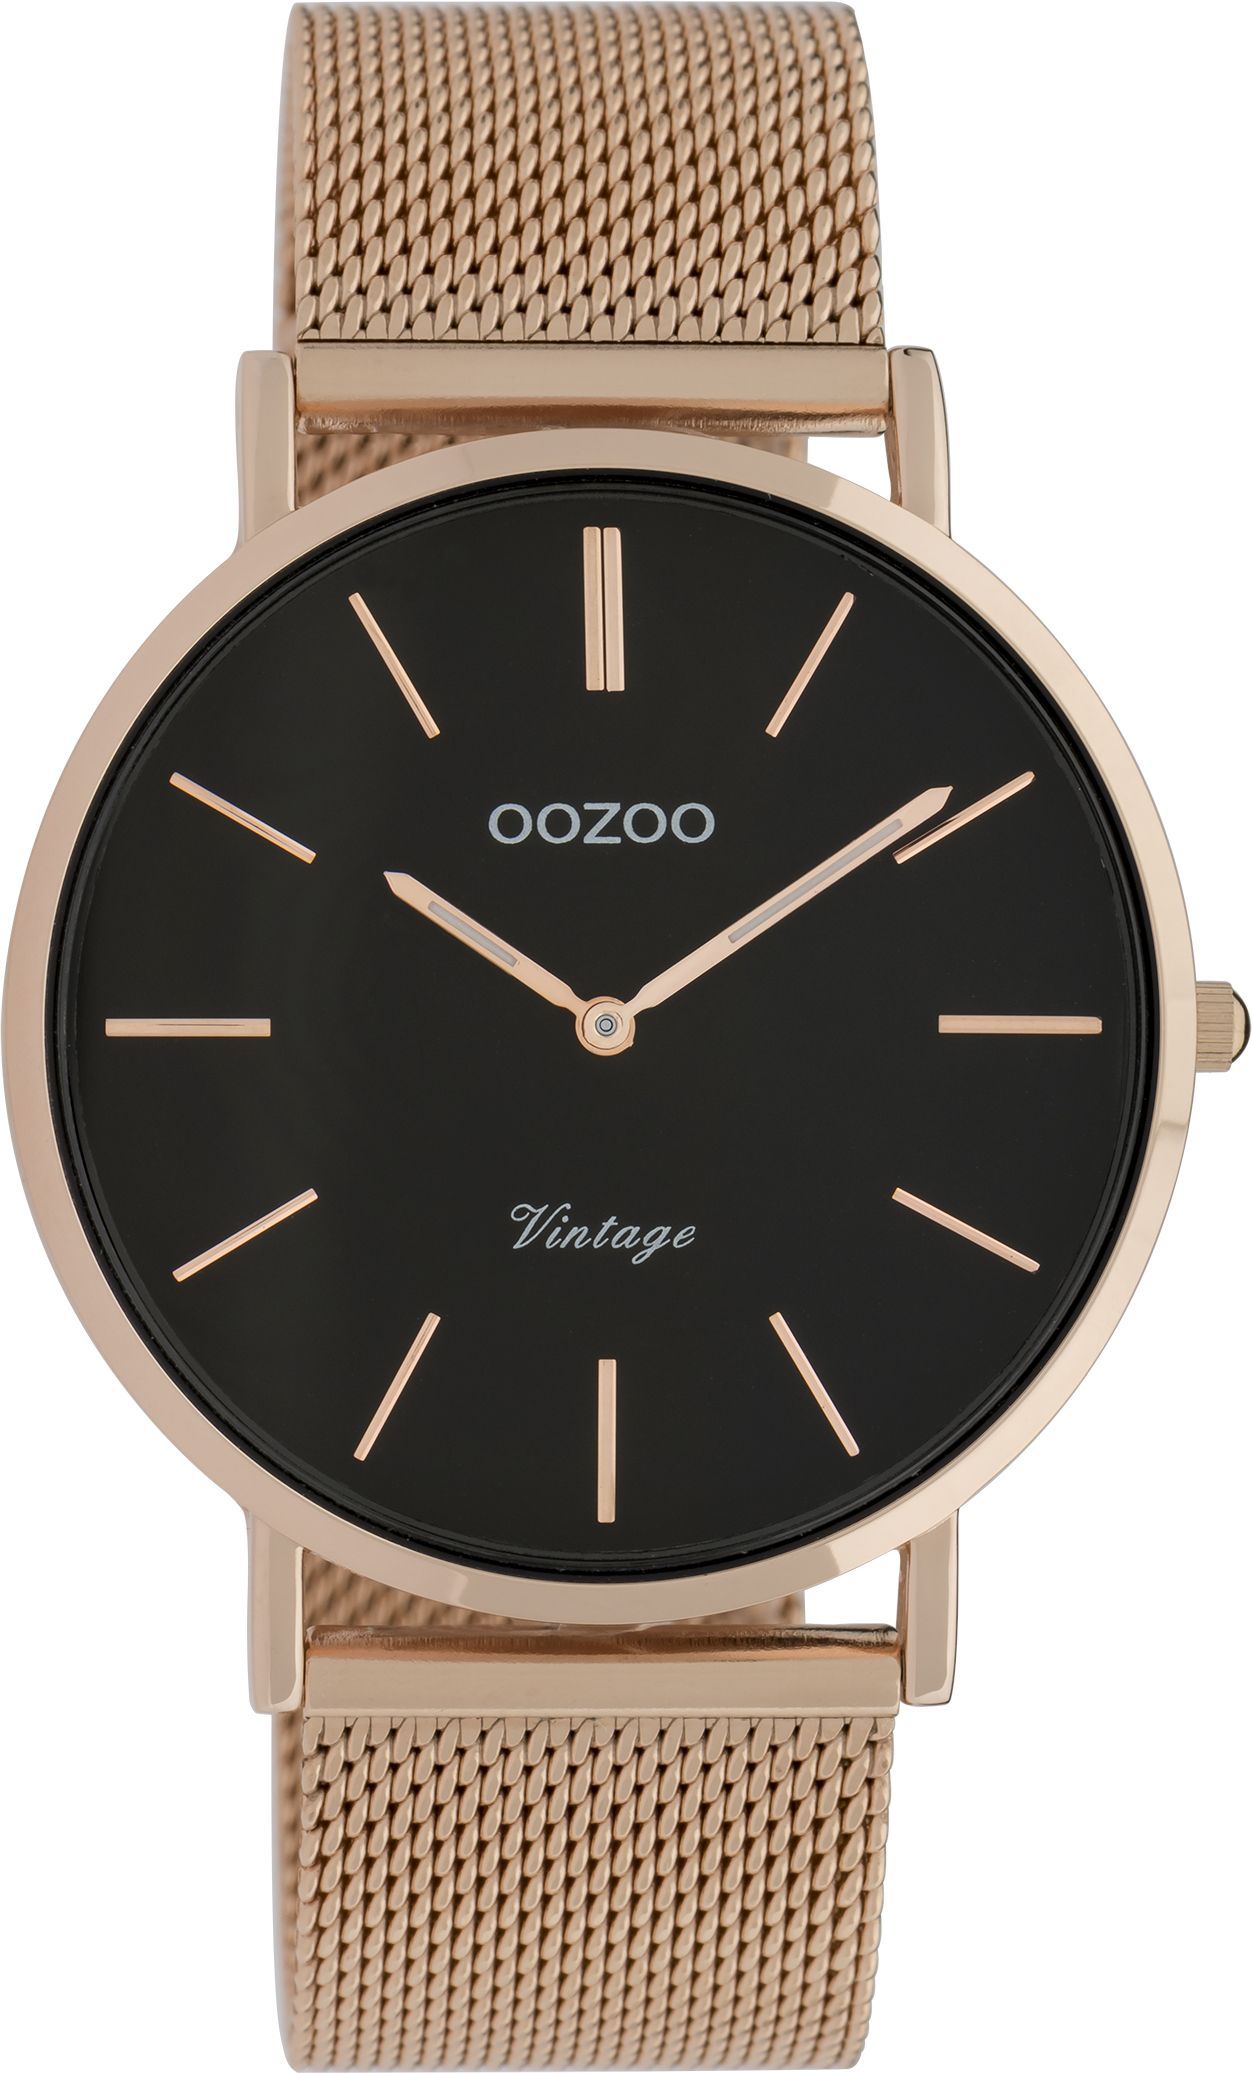 OOZOO Vintage C9925